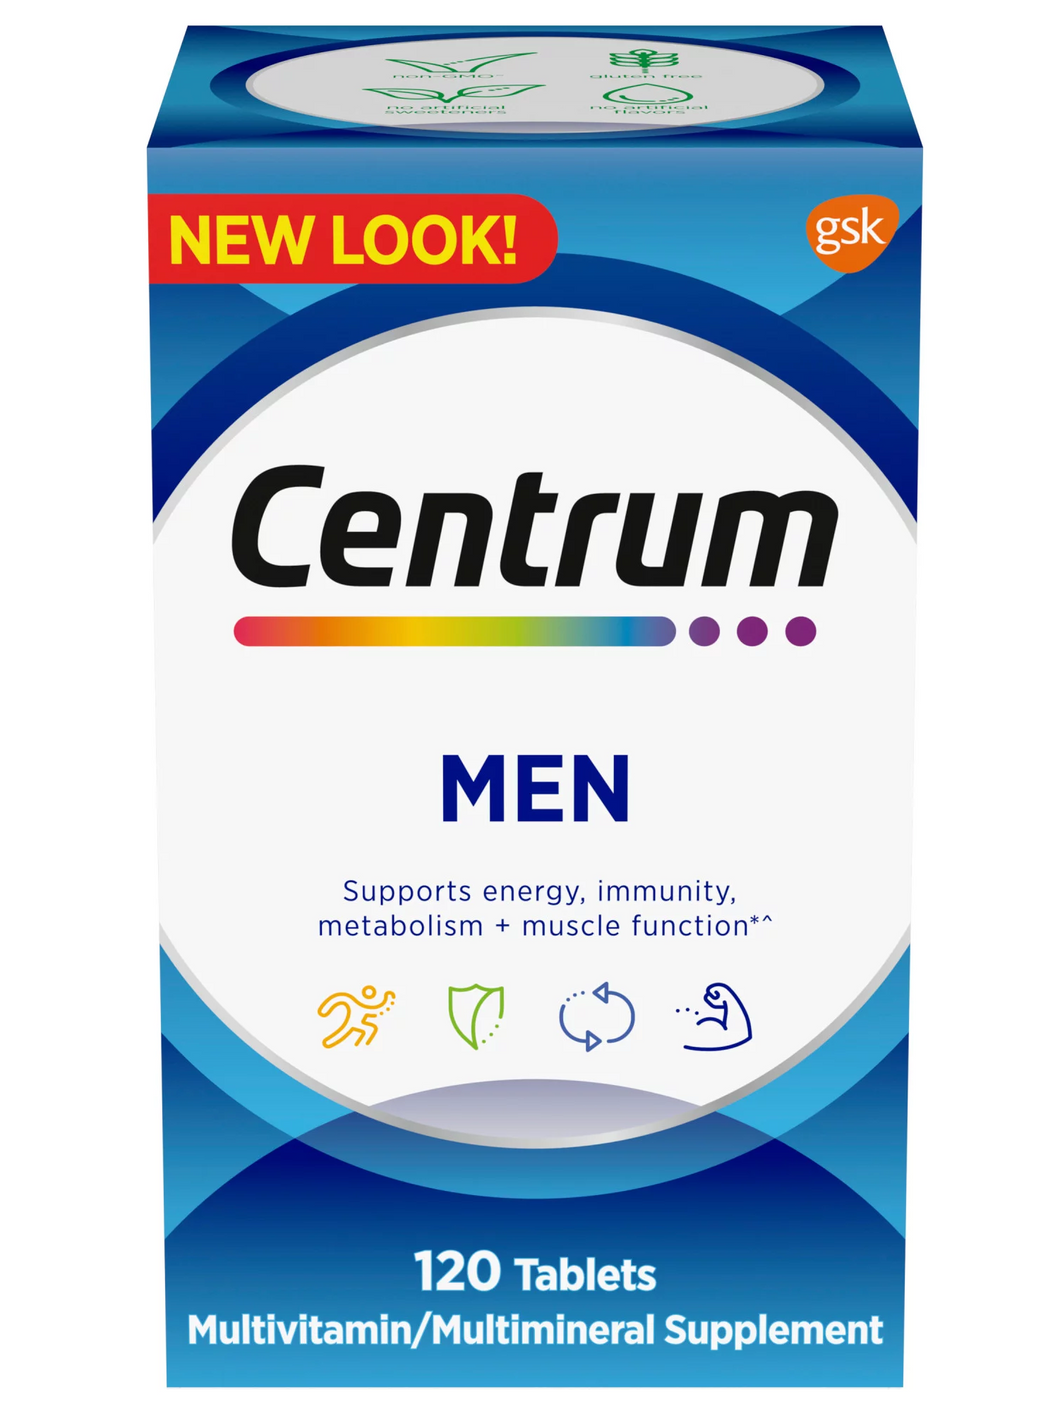 Multivitamínico Centrum para hombres: Vitaminas, Minerales, Energía, Metabolismo, Inmunidad, Músculos y Huesos. 120 tabletas